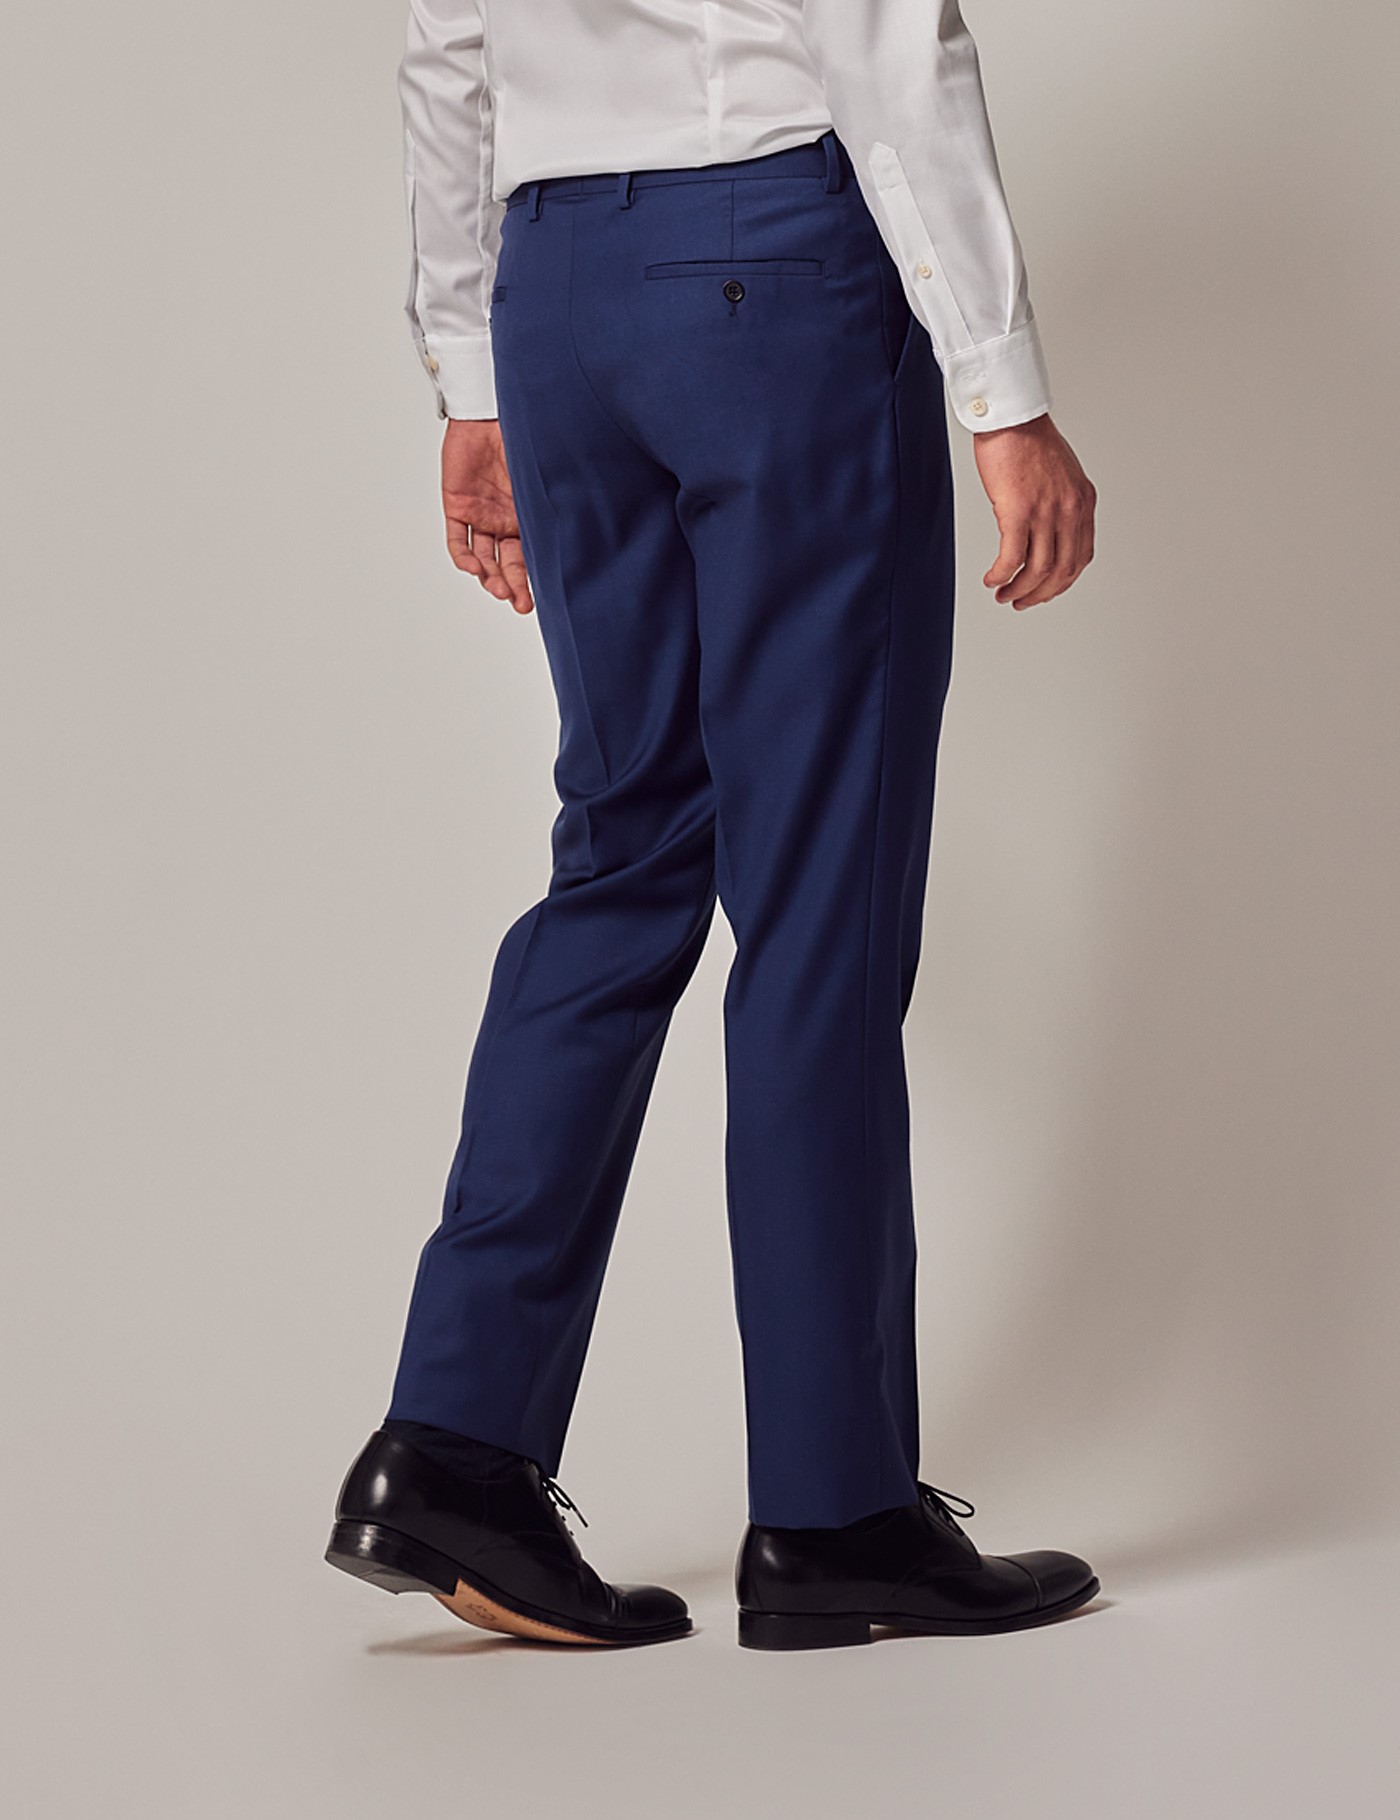 Men's Royal Blue Twill 2 Piece Slim Fit Suit | Hawes & Curtis